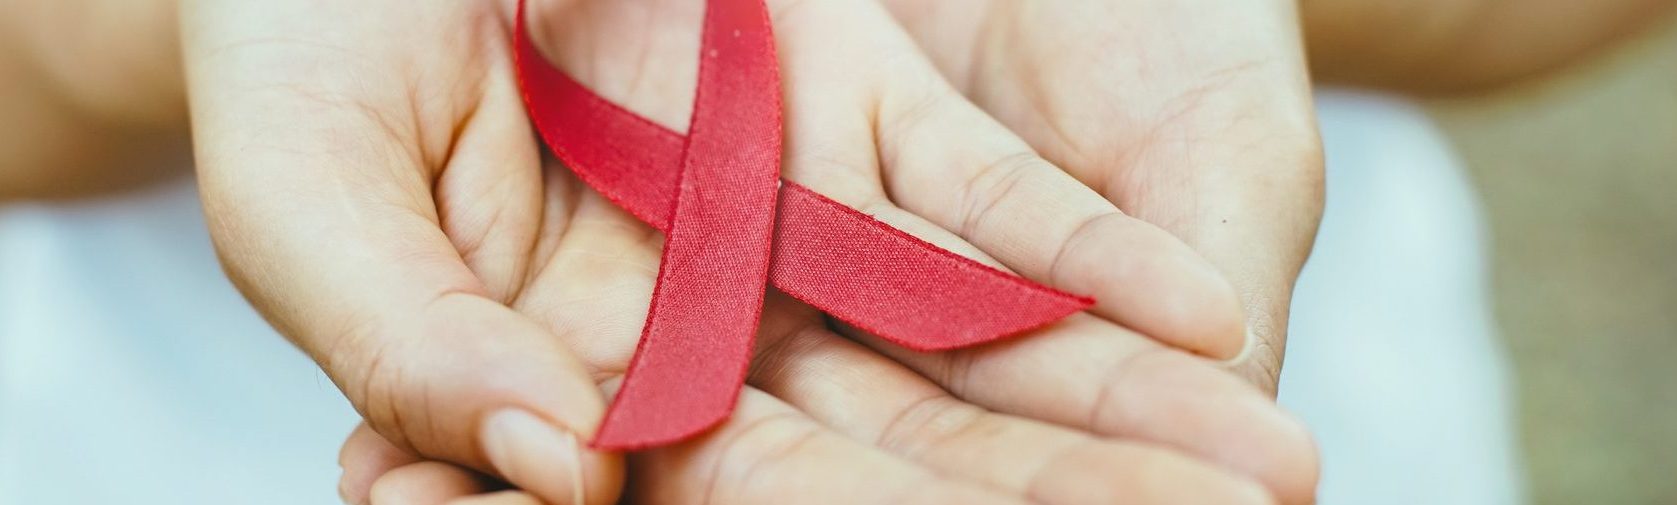 Consejos para prevenir el VIH y el SIDA